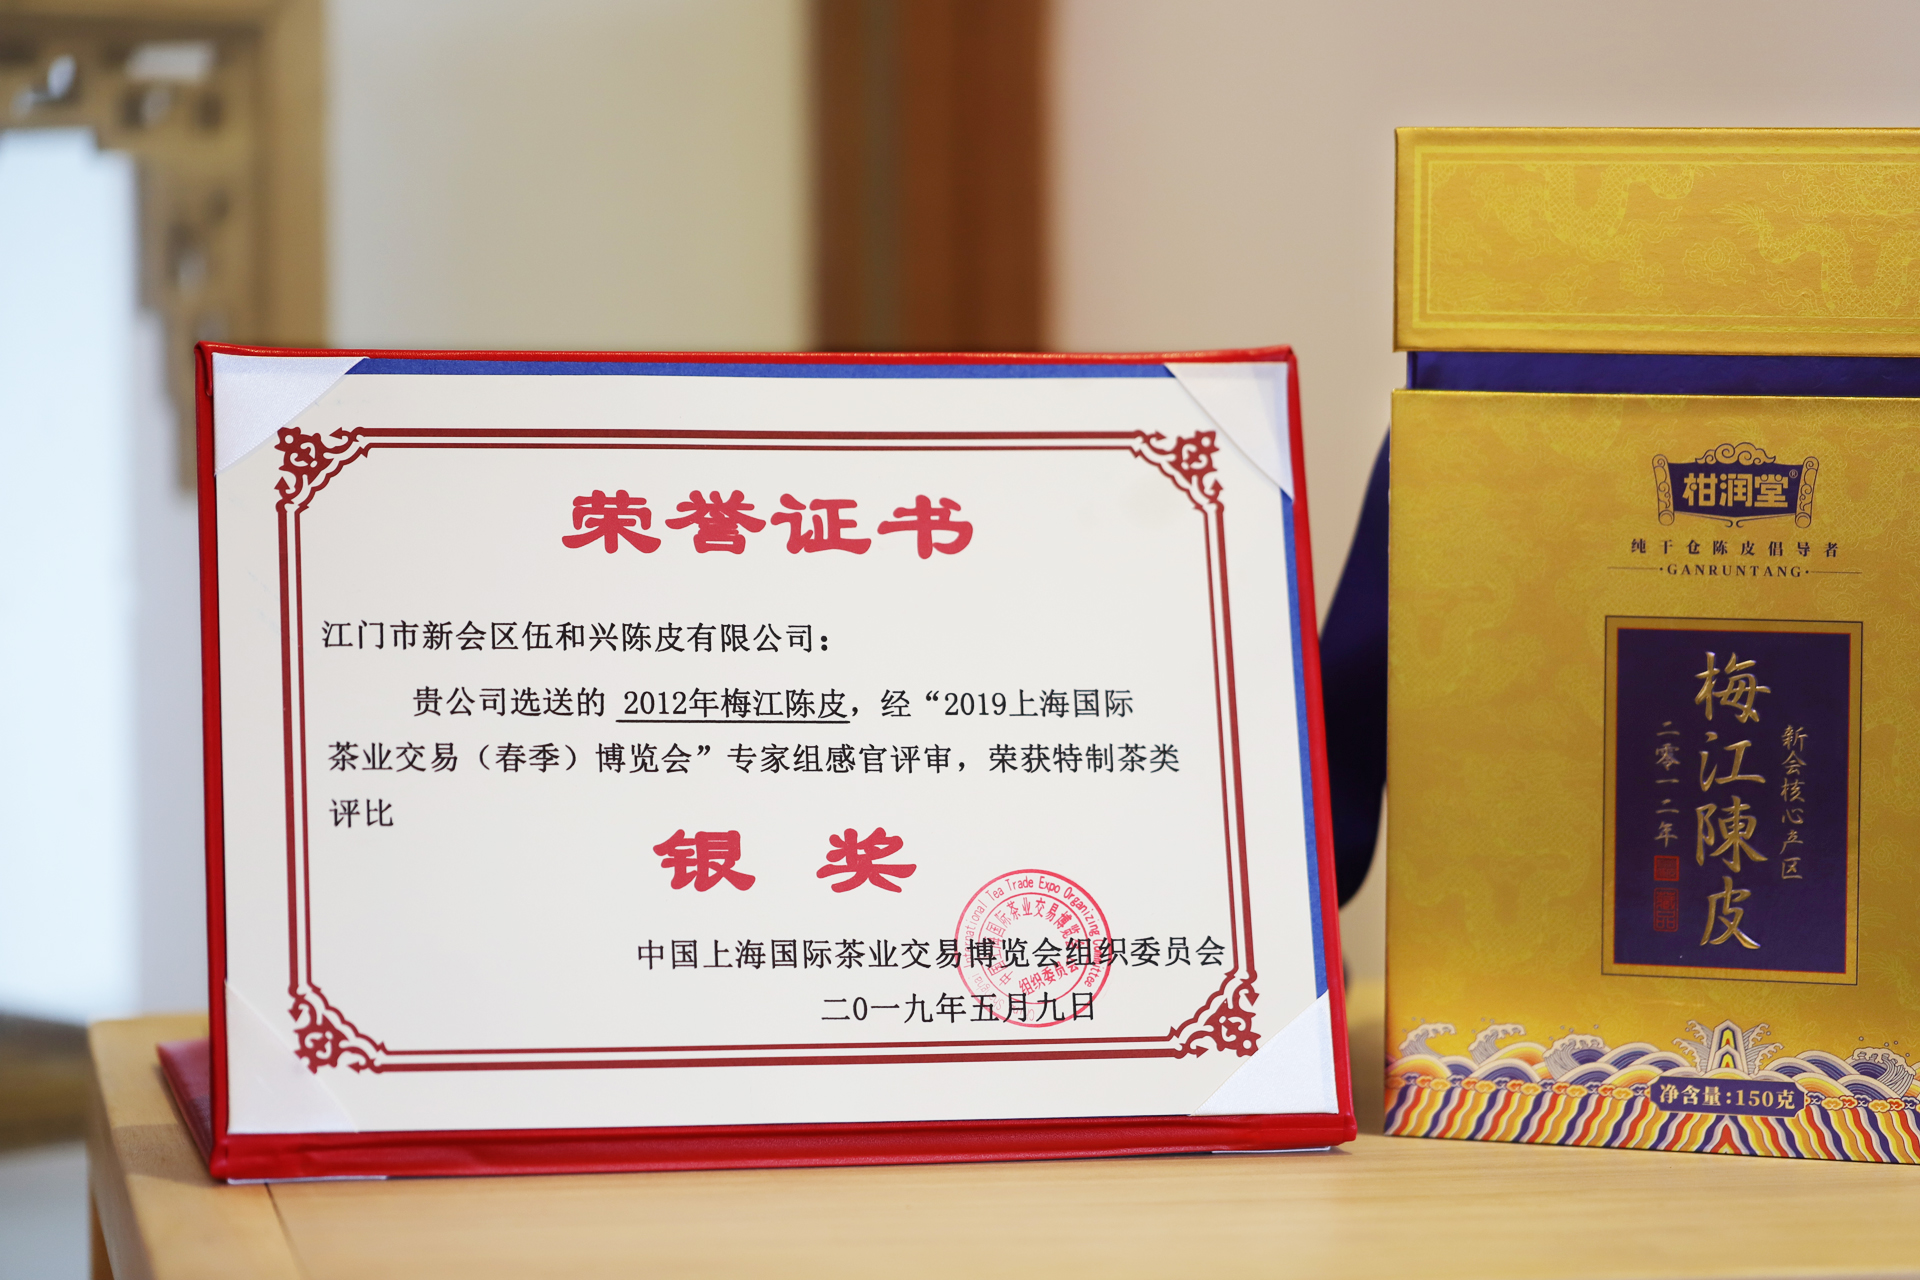 2012年梅江陈皮荣获“中国优质好茶”评选特制茶银奖